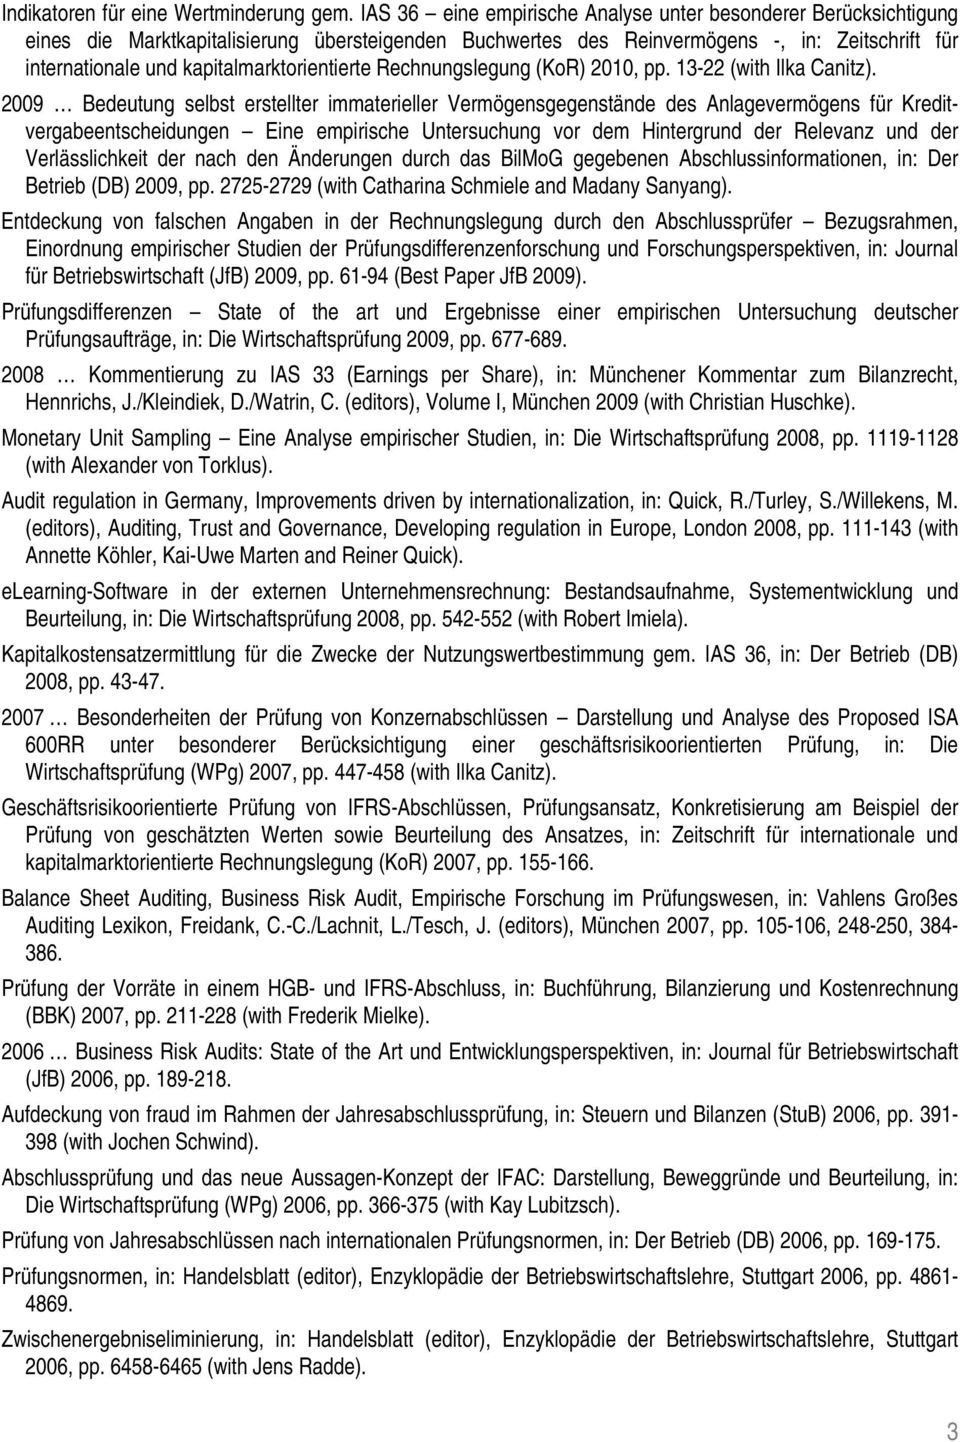 kapitalmarktorientierte Rechnungslegung (KoR) 2010, pp. 13-22 (with Ilka Canitz).